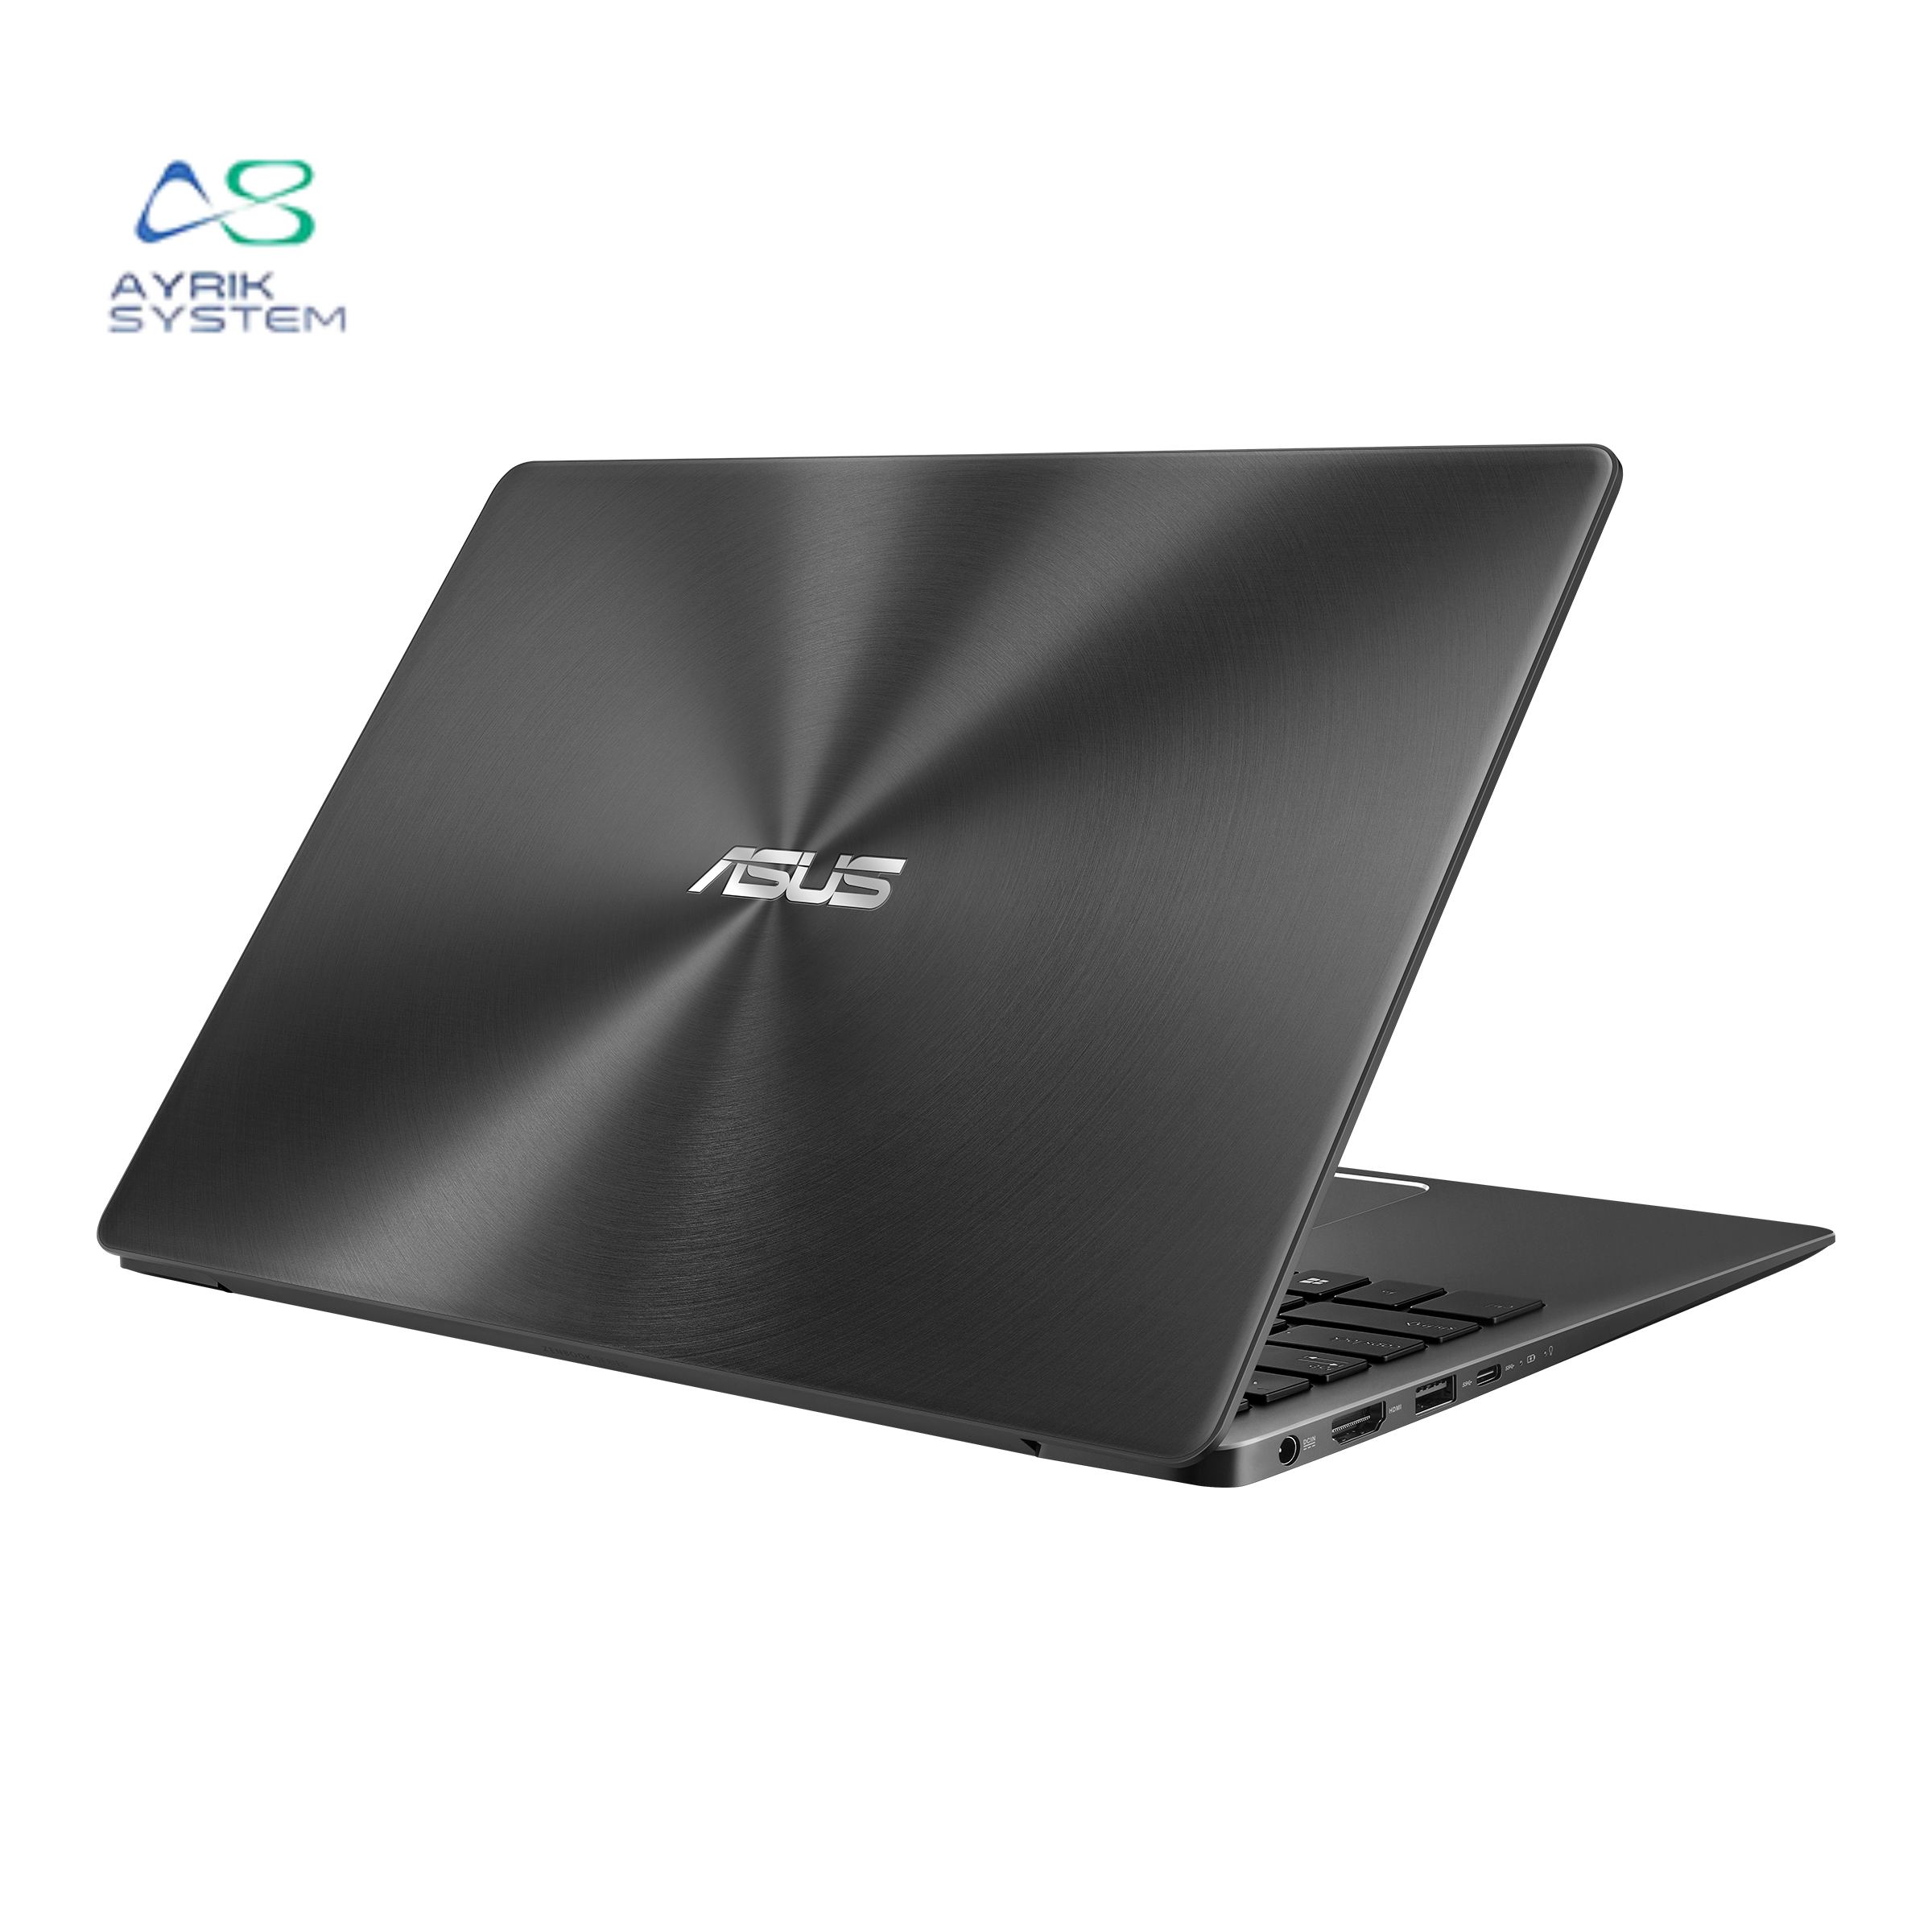 لپ تاپ ایسوس Asus ZenBook UX331FN  i7(8665U) 16GB DDR4 512SSD  Intel UHD  GeForce MX150 2GB 